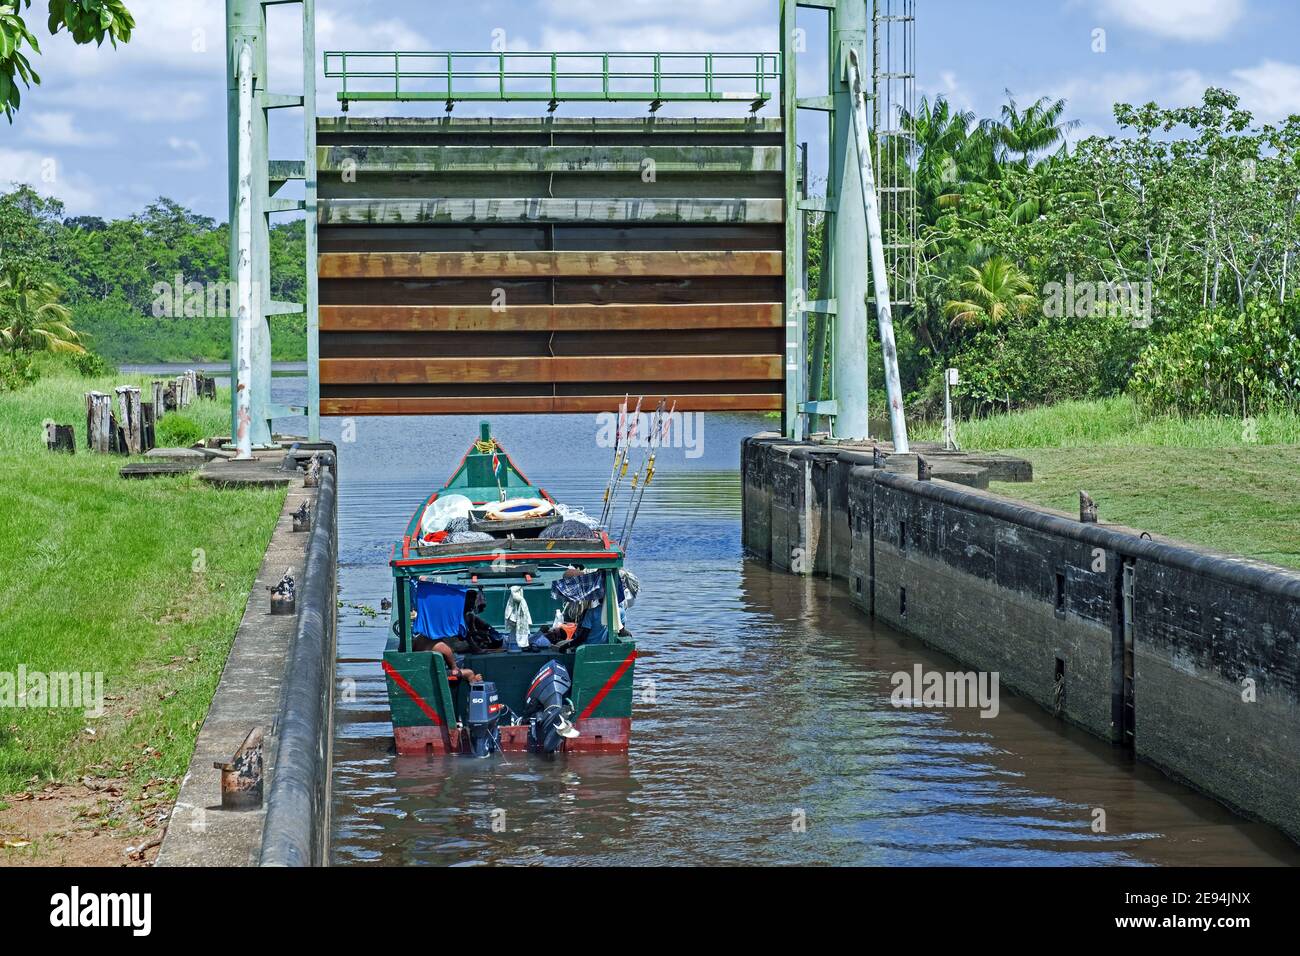 Kleine traditionelle hölzerne Fischerboot verlassen Schleuse / Schleuse Tor auf dem Saramacca Fluss im Dorf Uitkijk, Saramacca District, Suriname / Surinam Stockfoto